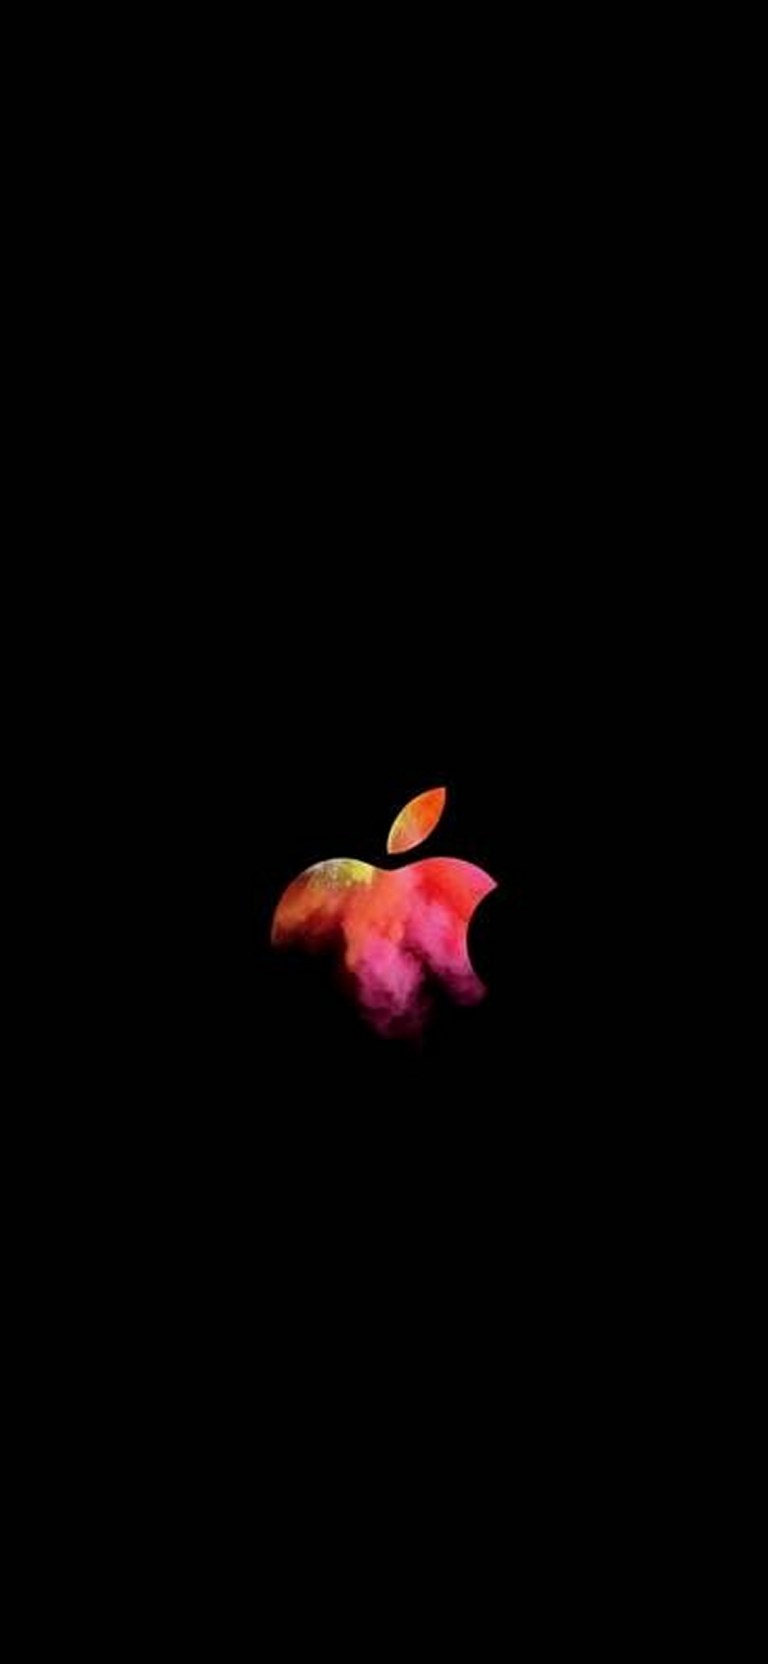 Apple iPhone Logo Minimalist Full HD Wallpaper